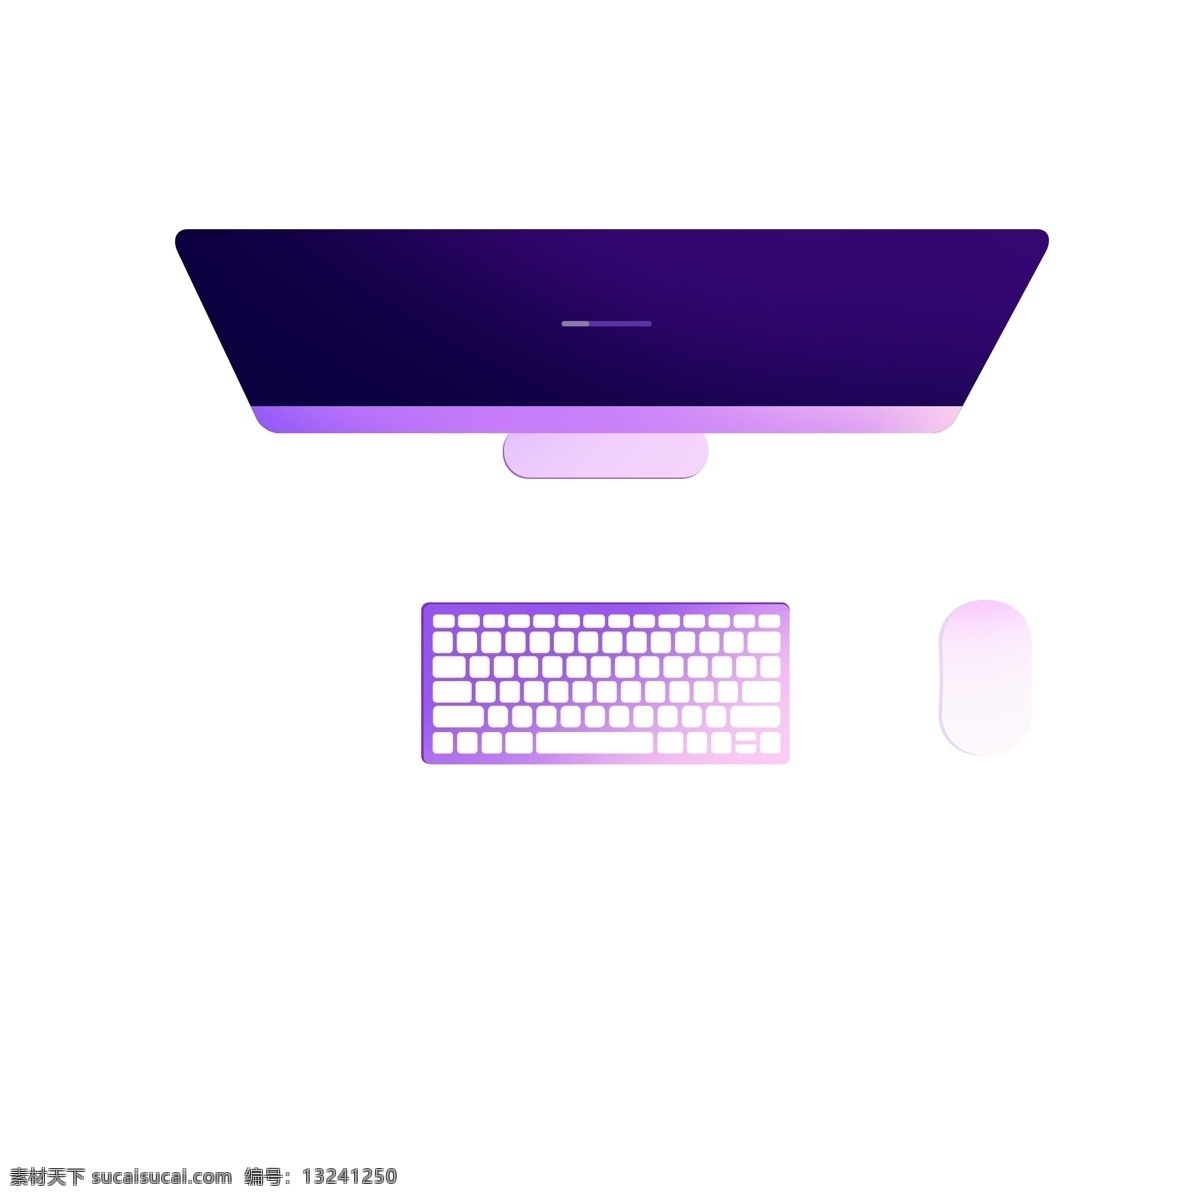 台式 扁平化 商务 电脑 免 扣 显示器 科技 键盘 鼠标 套装 桌面 紫色 立体 阴影 俯视 办公 矢量 png免扣